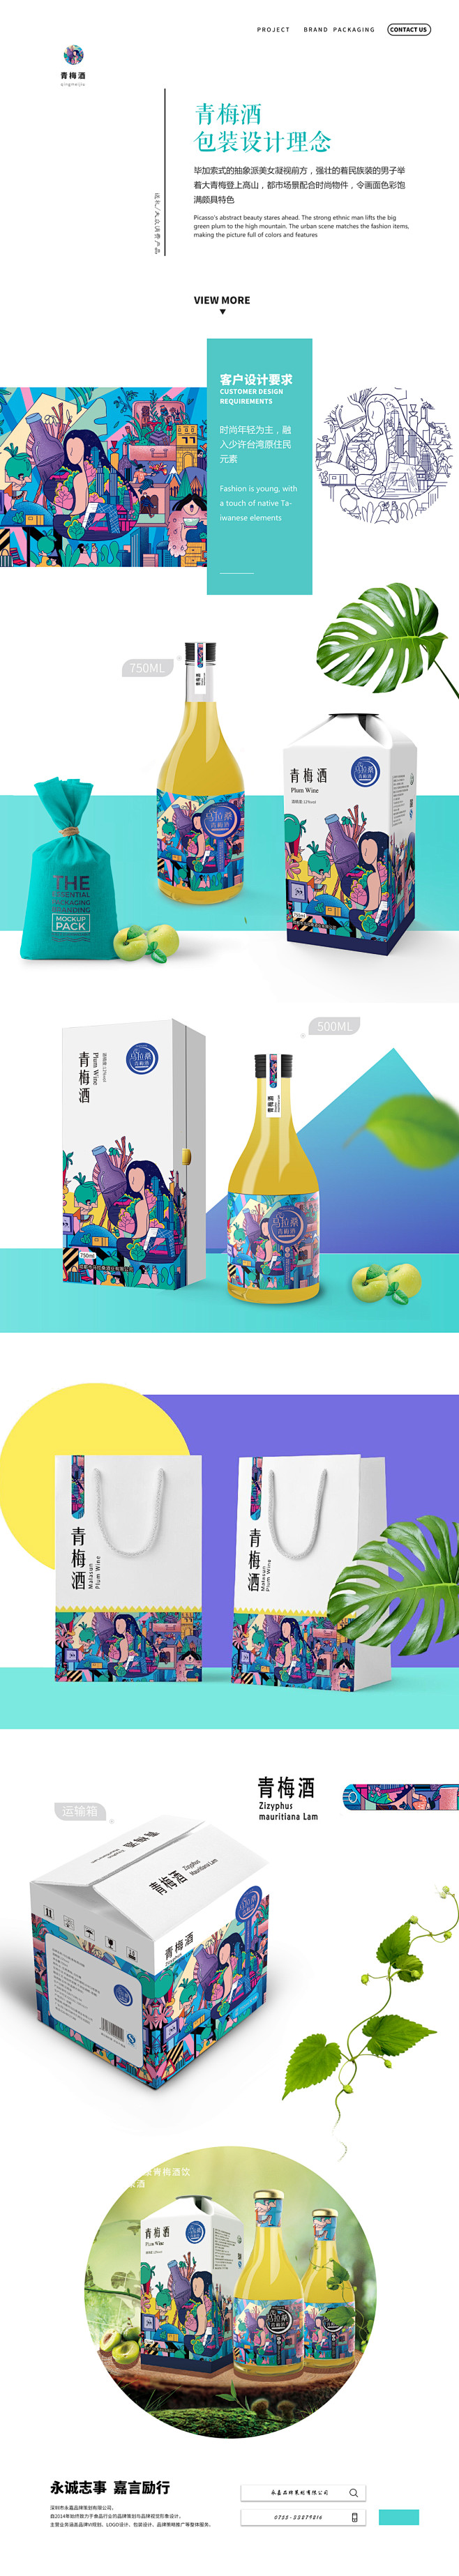 青梅酒包装设计-古田路9号-品牌创意/版...